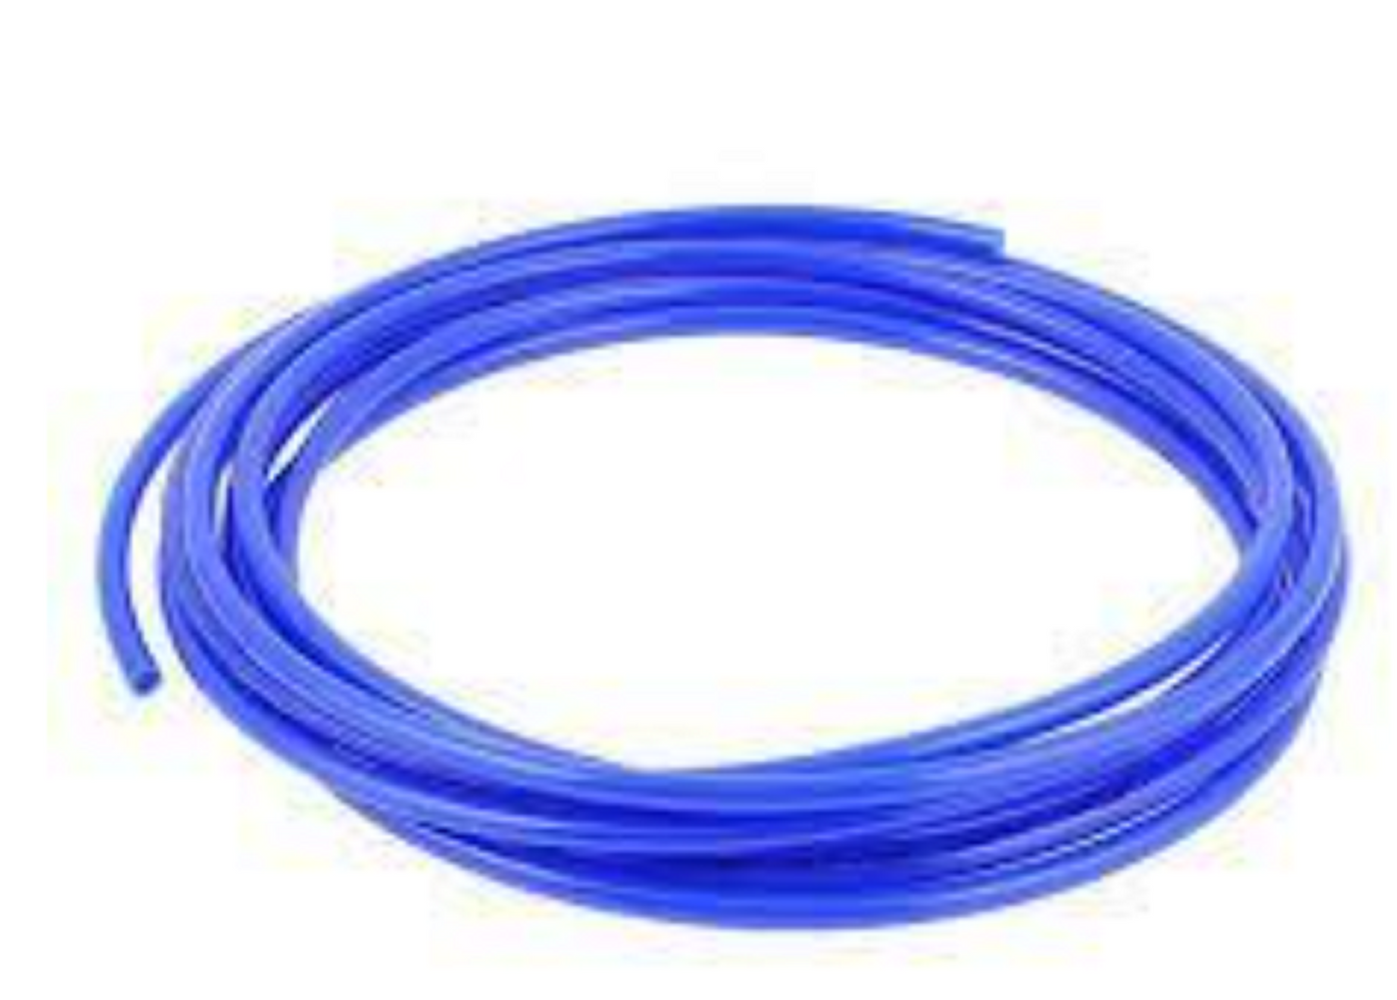 Polyurethane PU Tube - 10mm OD x 6.5mm ID  Blue - Per 1m Metre Length